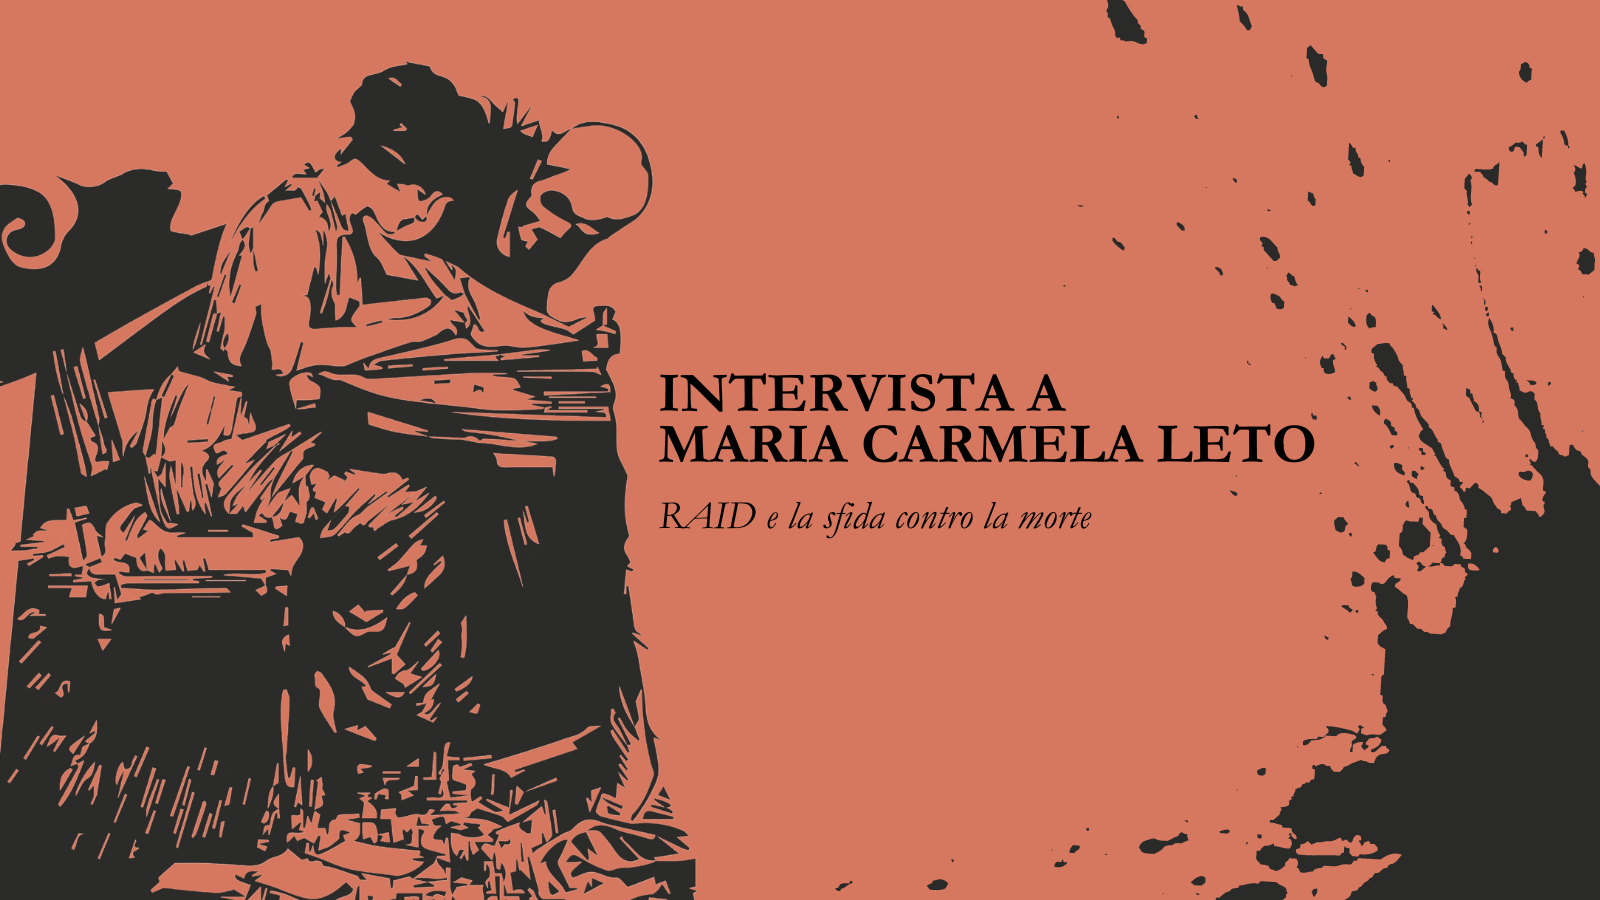 Intervista a Mariacarmela Leto: RAID e la sfida contro la morte